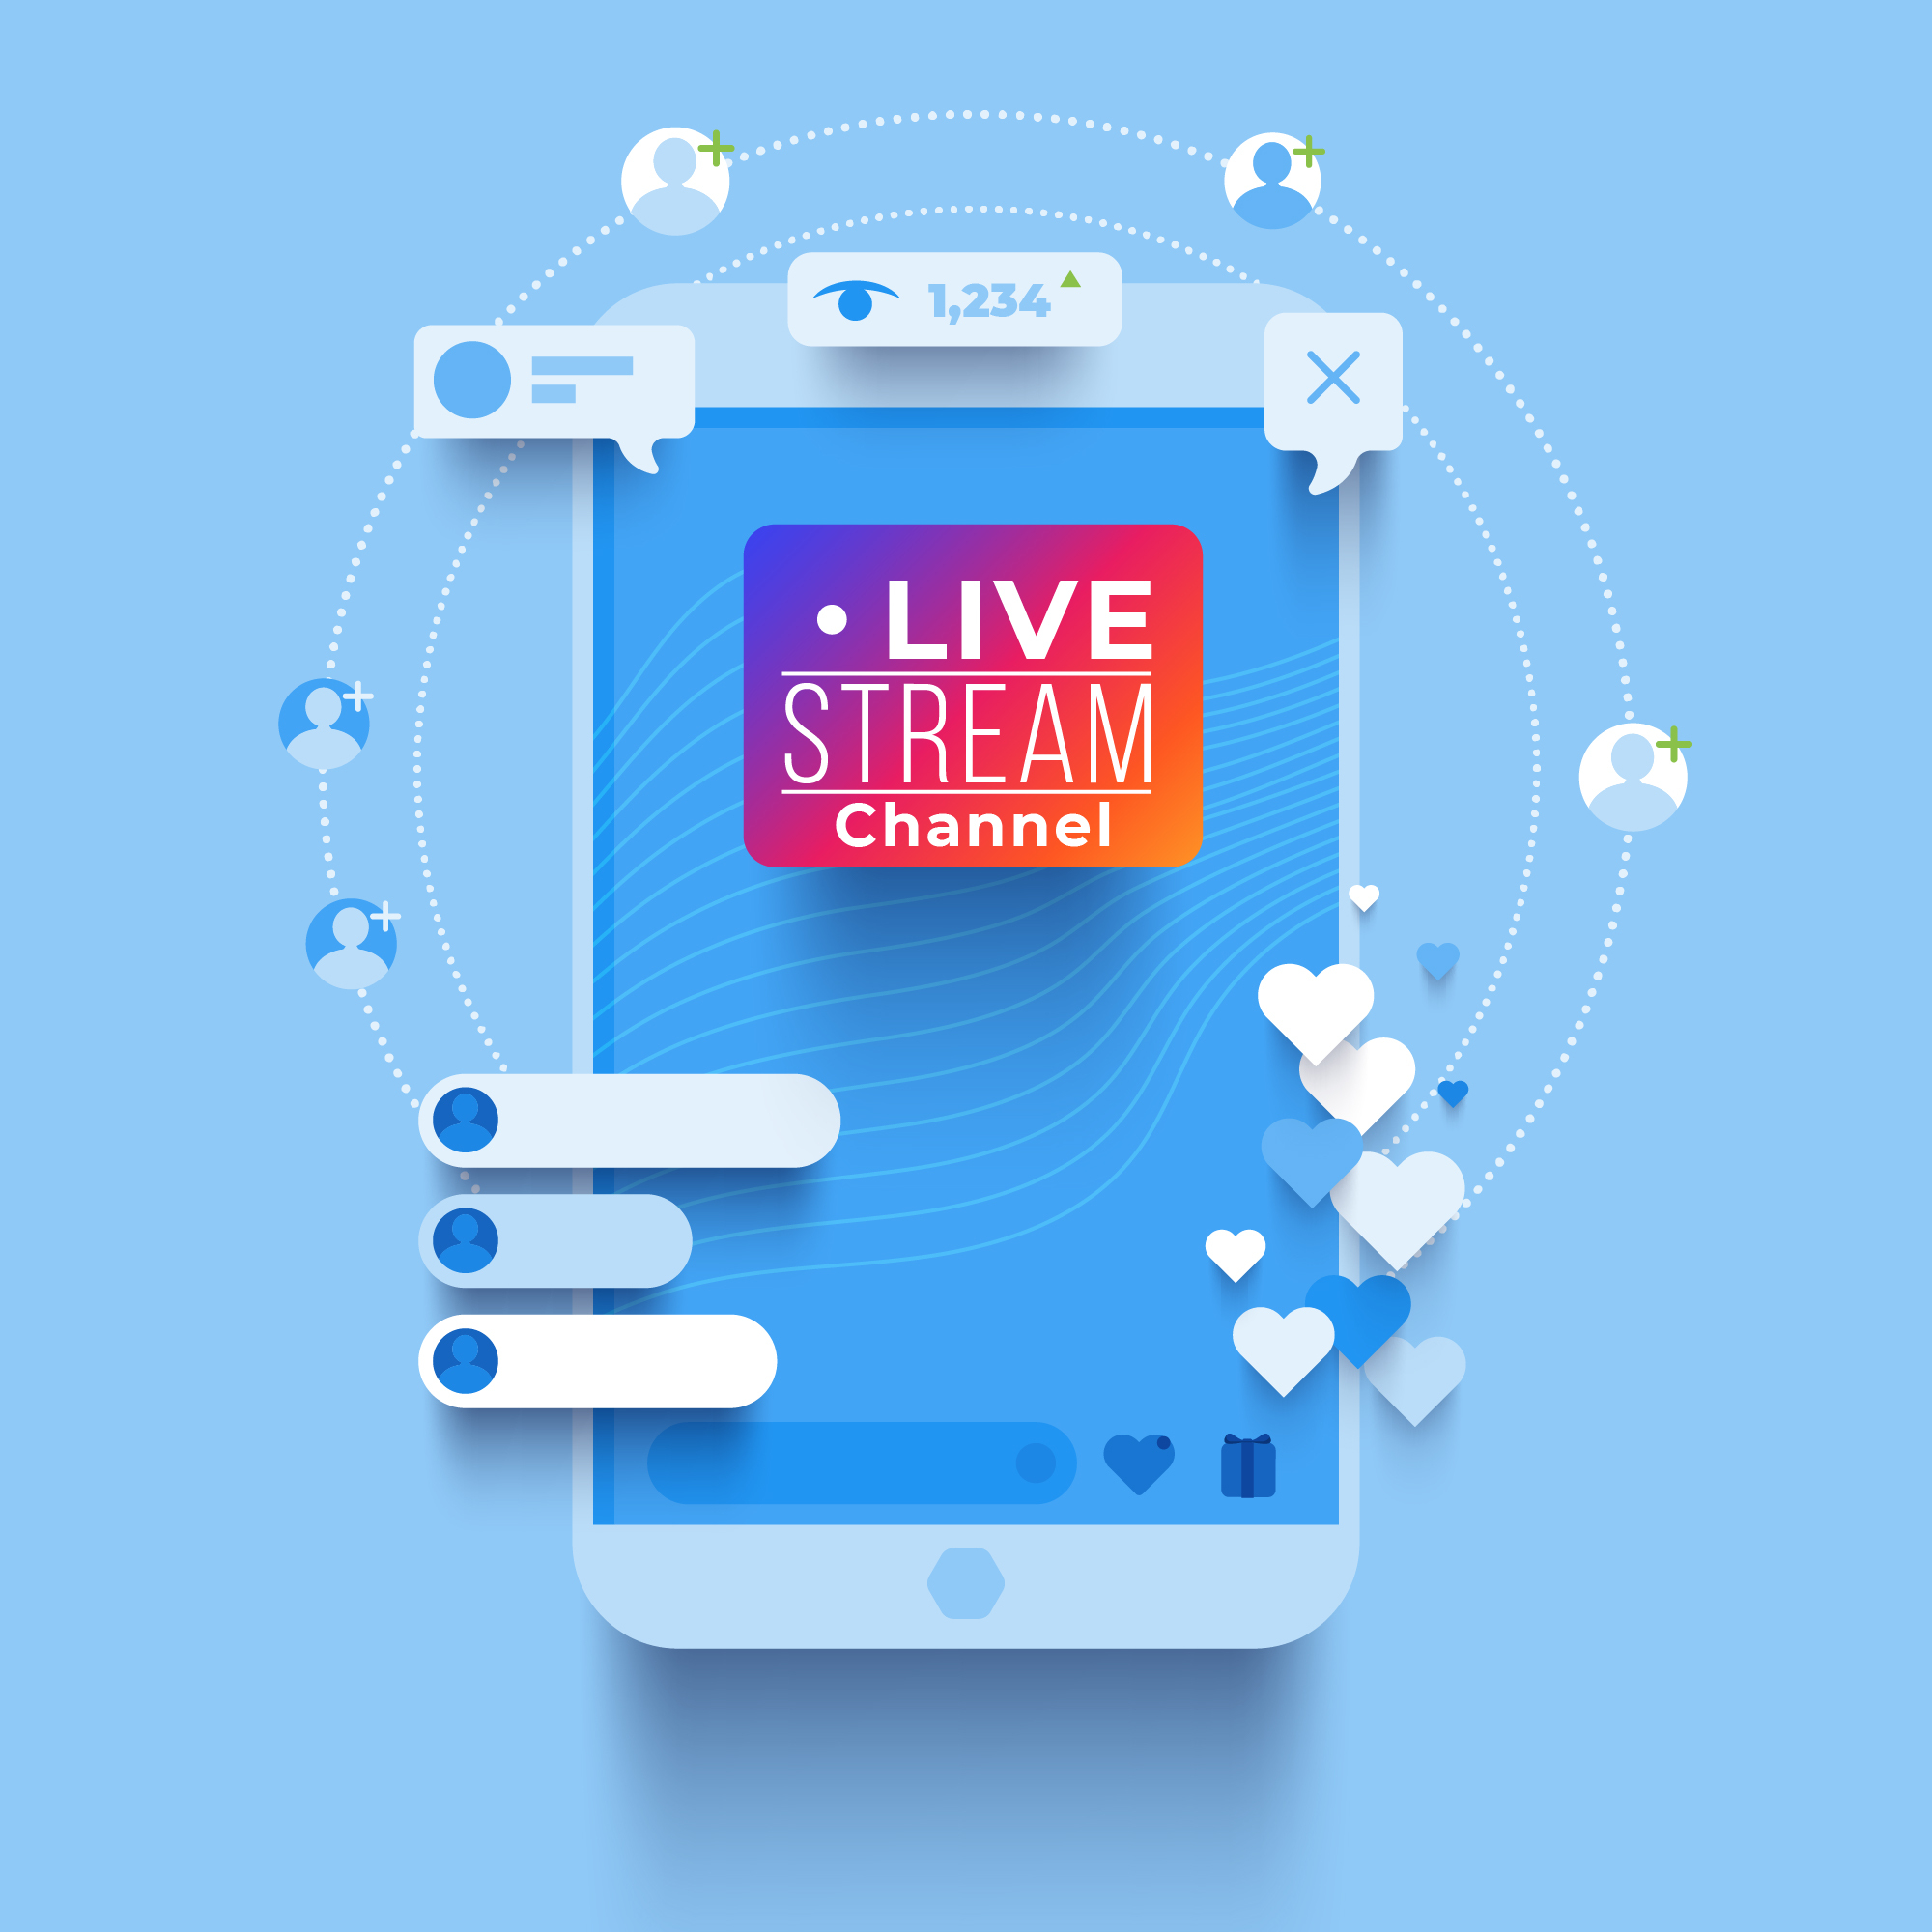 social media live streaming